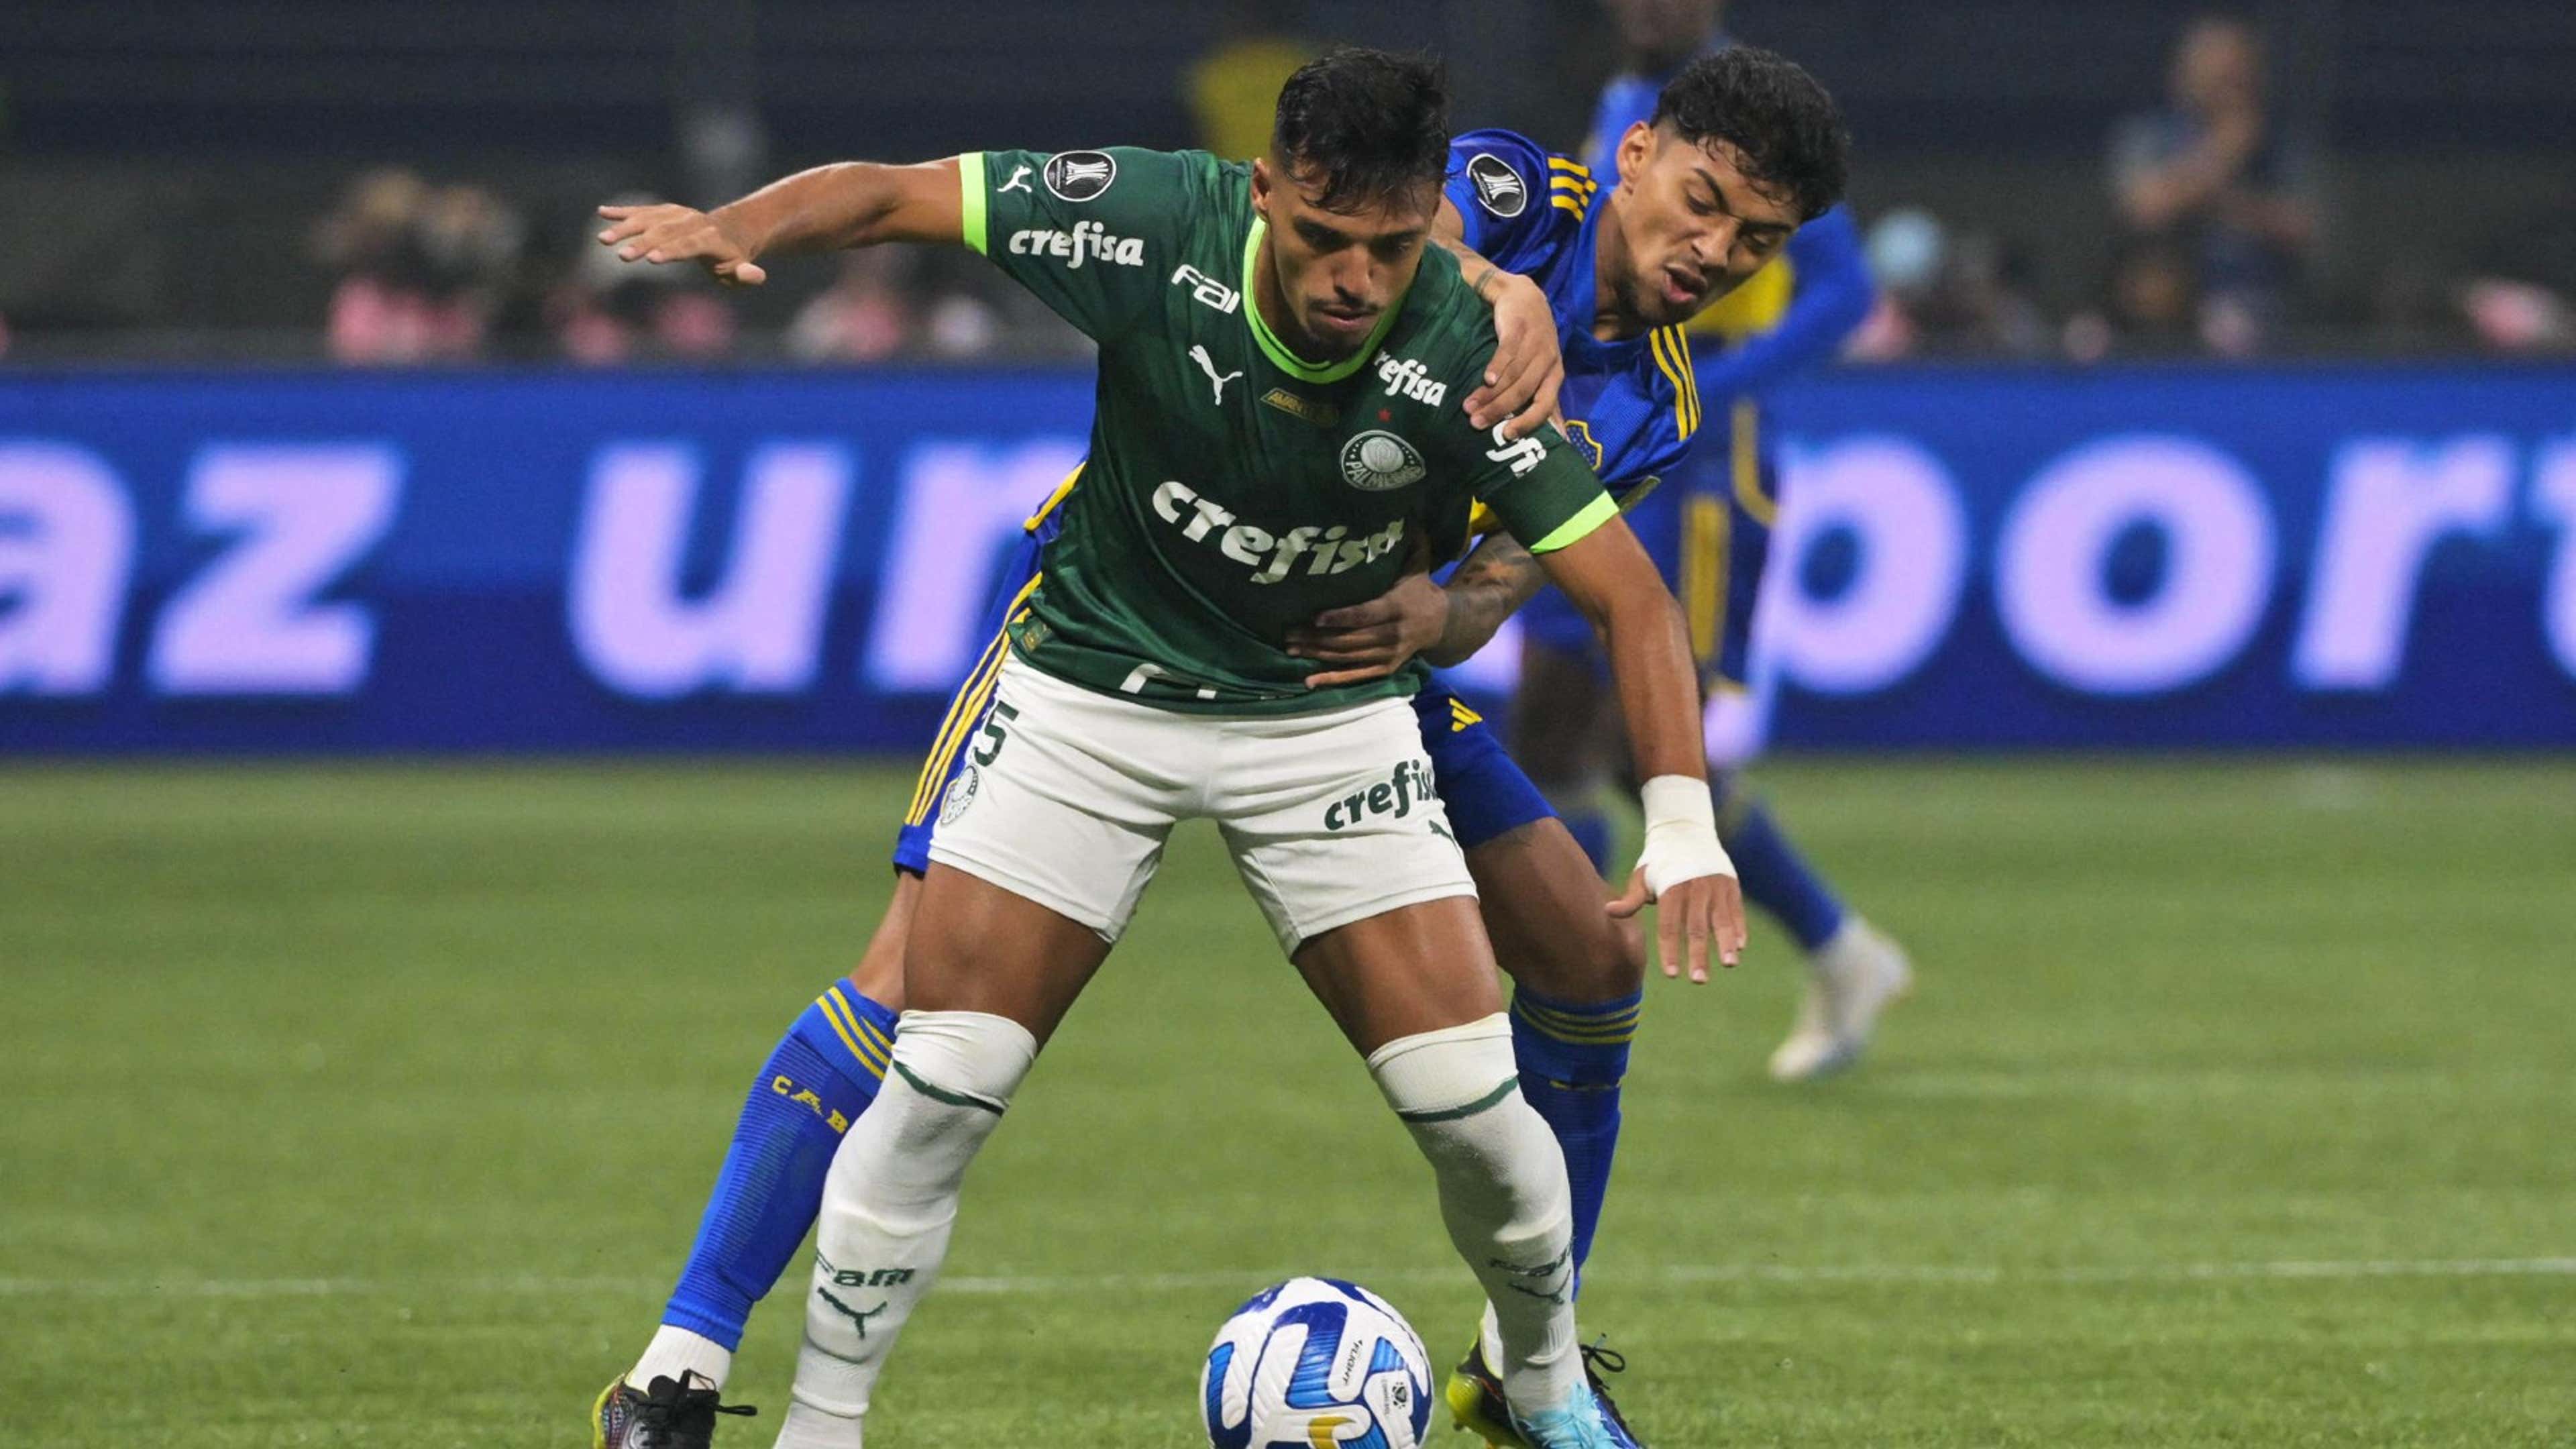 TÁ FORA! Palmeiras é ELIMINADO NOS PÊNALTIS pelo Boca Juniors na SEMI da  Libertadores!